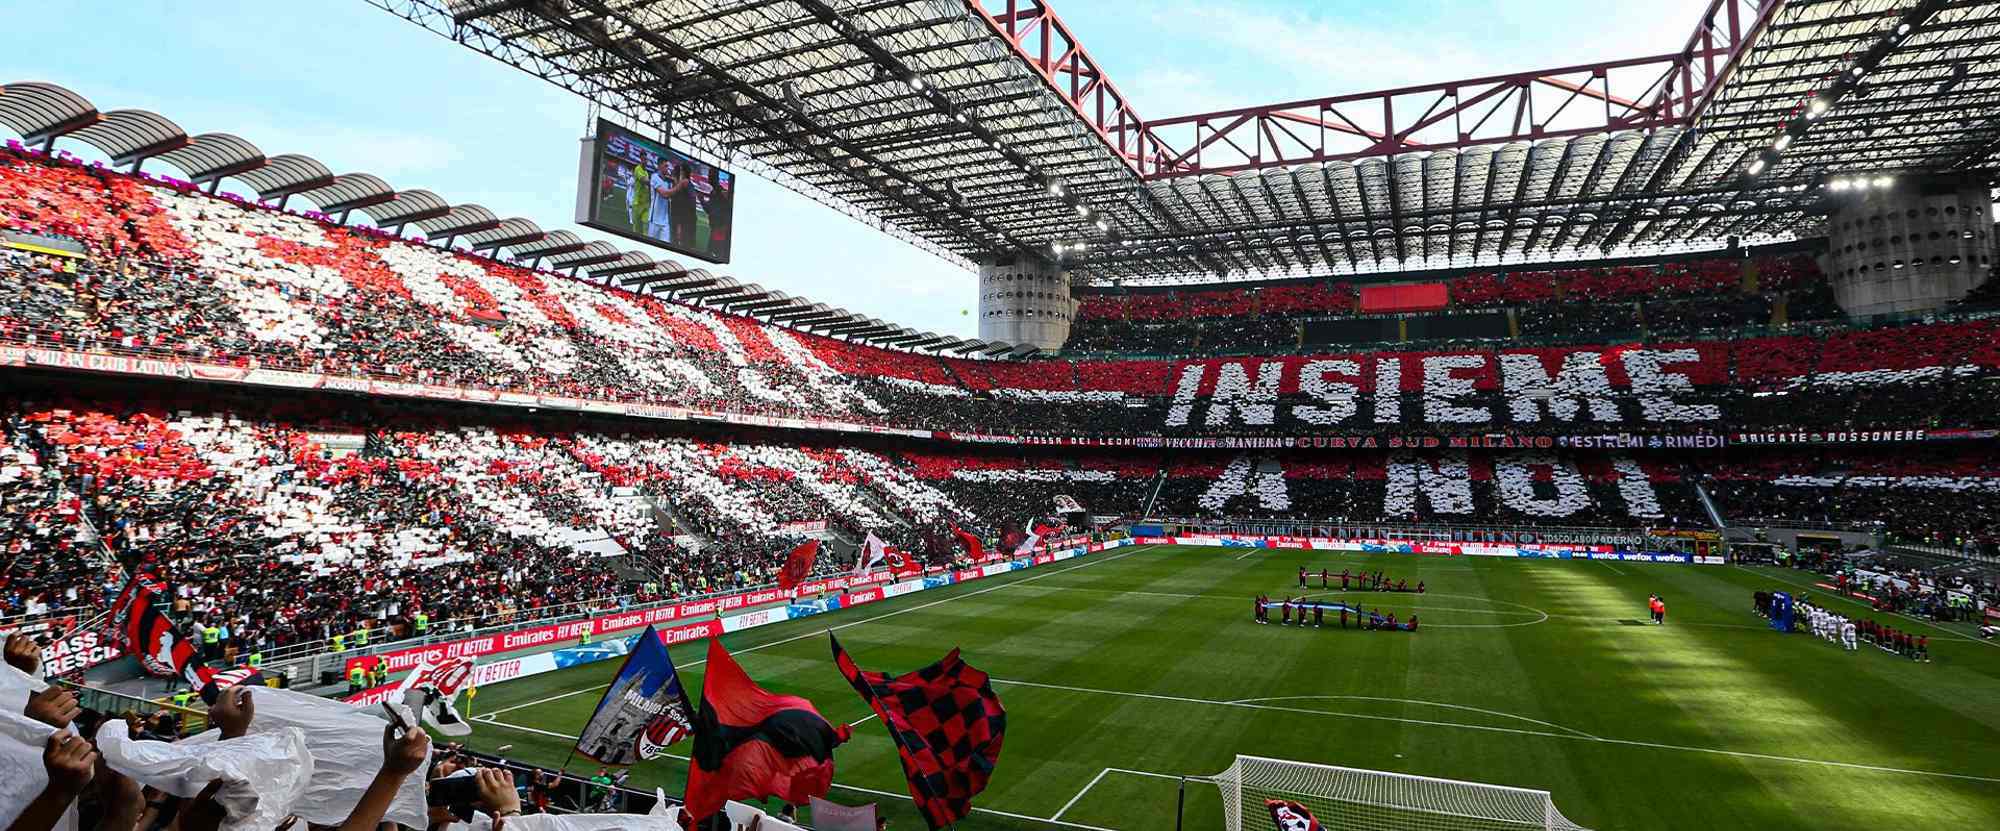 AC Milan v Genoa C.F.C.